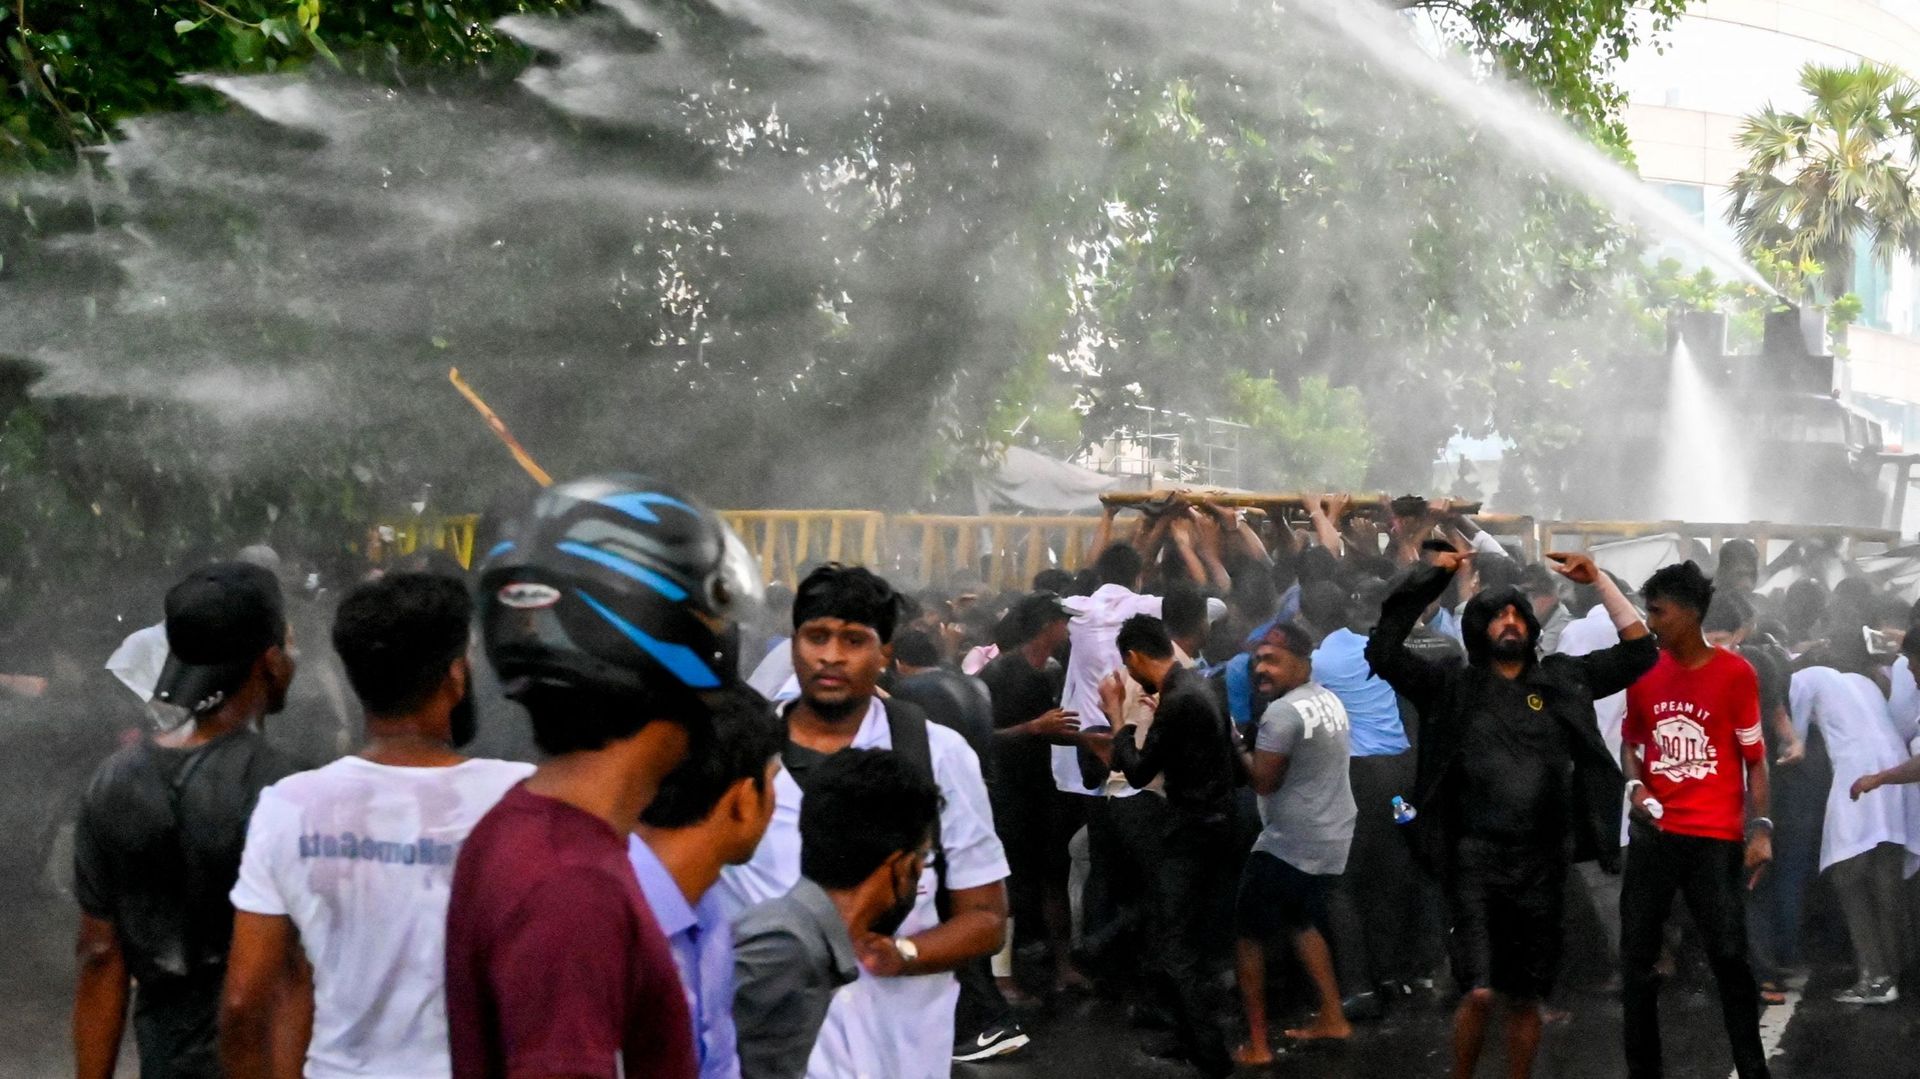 La police utilise un canon à eau pour disperser des étudiants de la faculté de médecine et des sciences lors d'une manifestation anti-gouvernementale demandant la démission du président du Sri Lanka, Gotabaya Rajapaksa, en raison de la crise économique qu